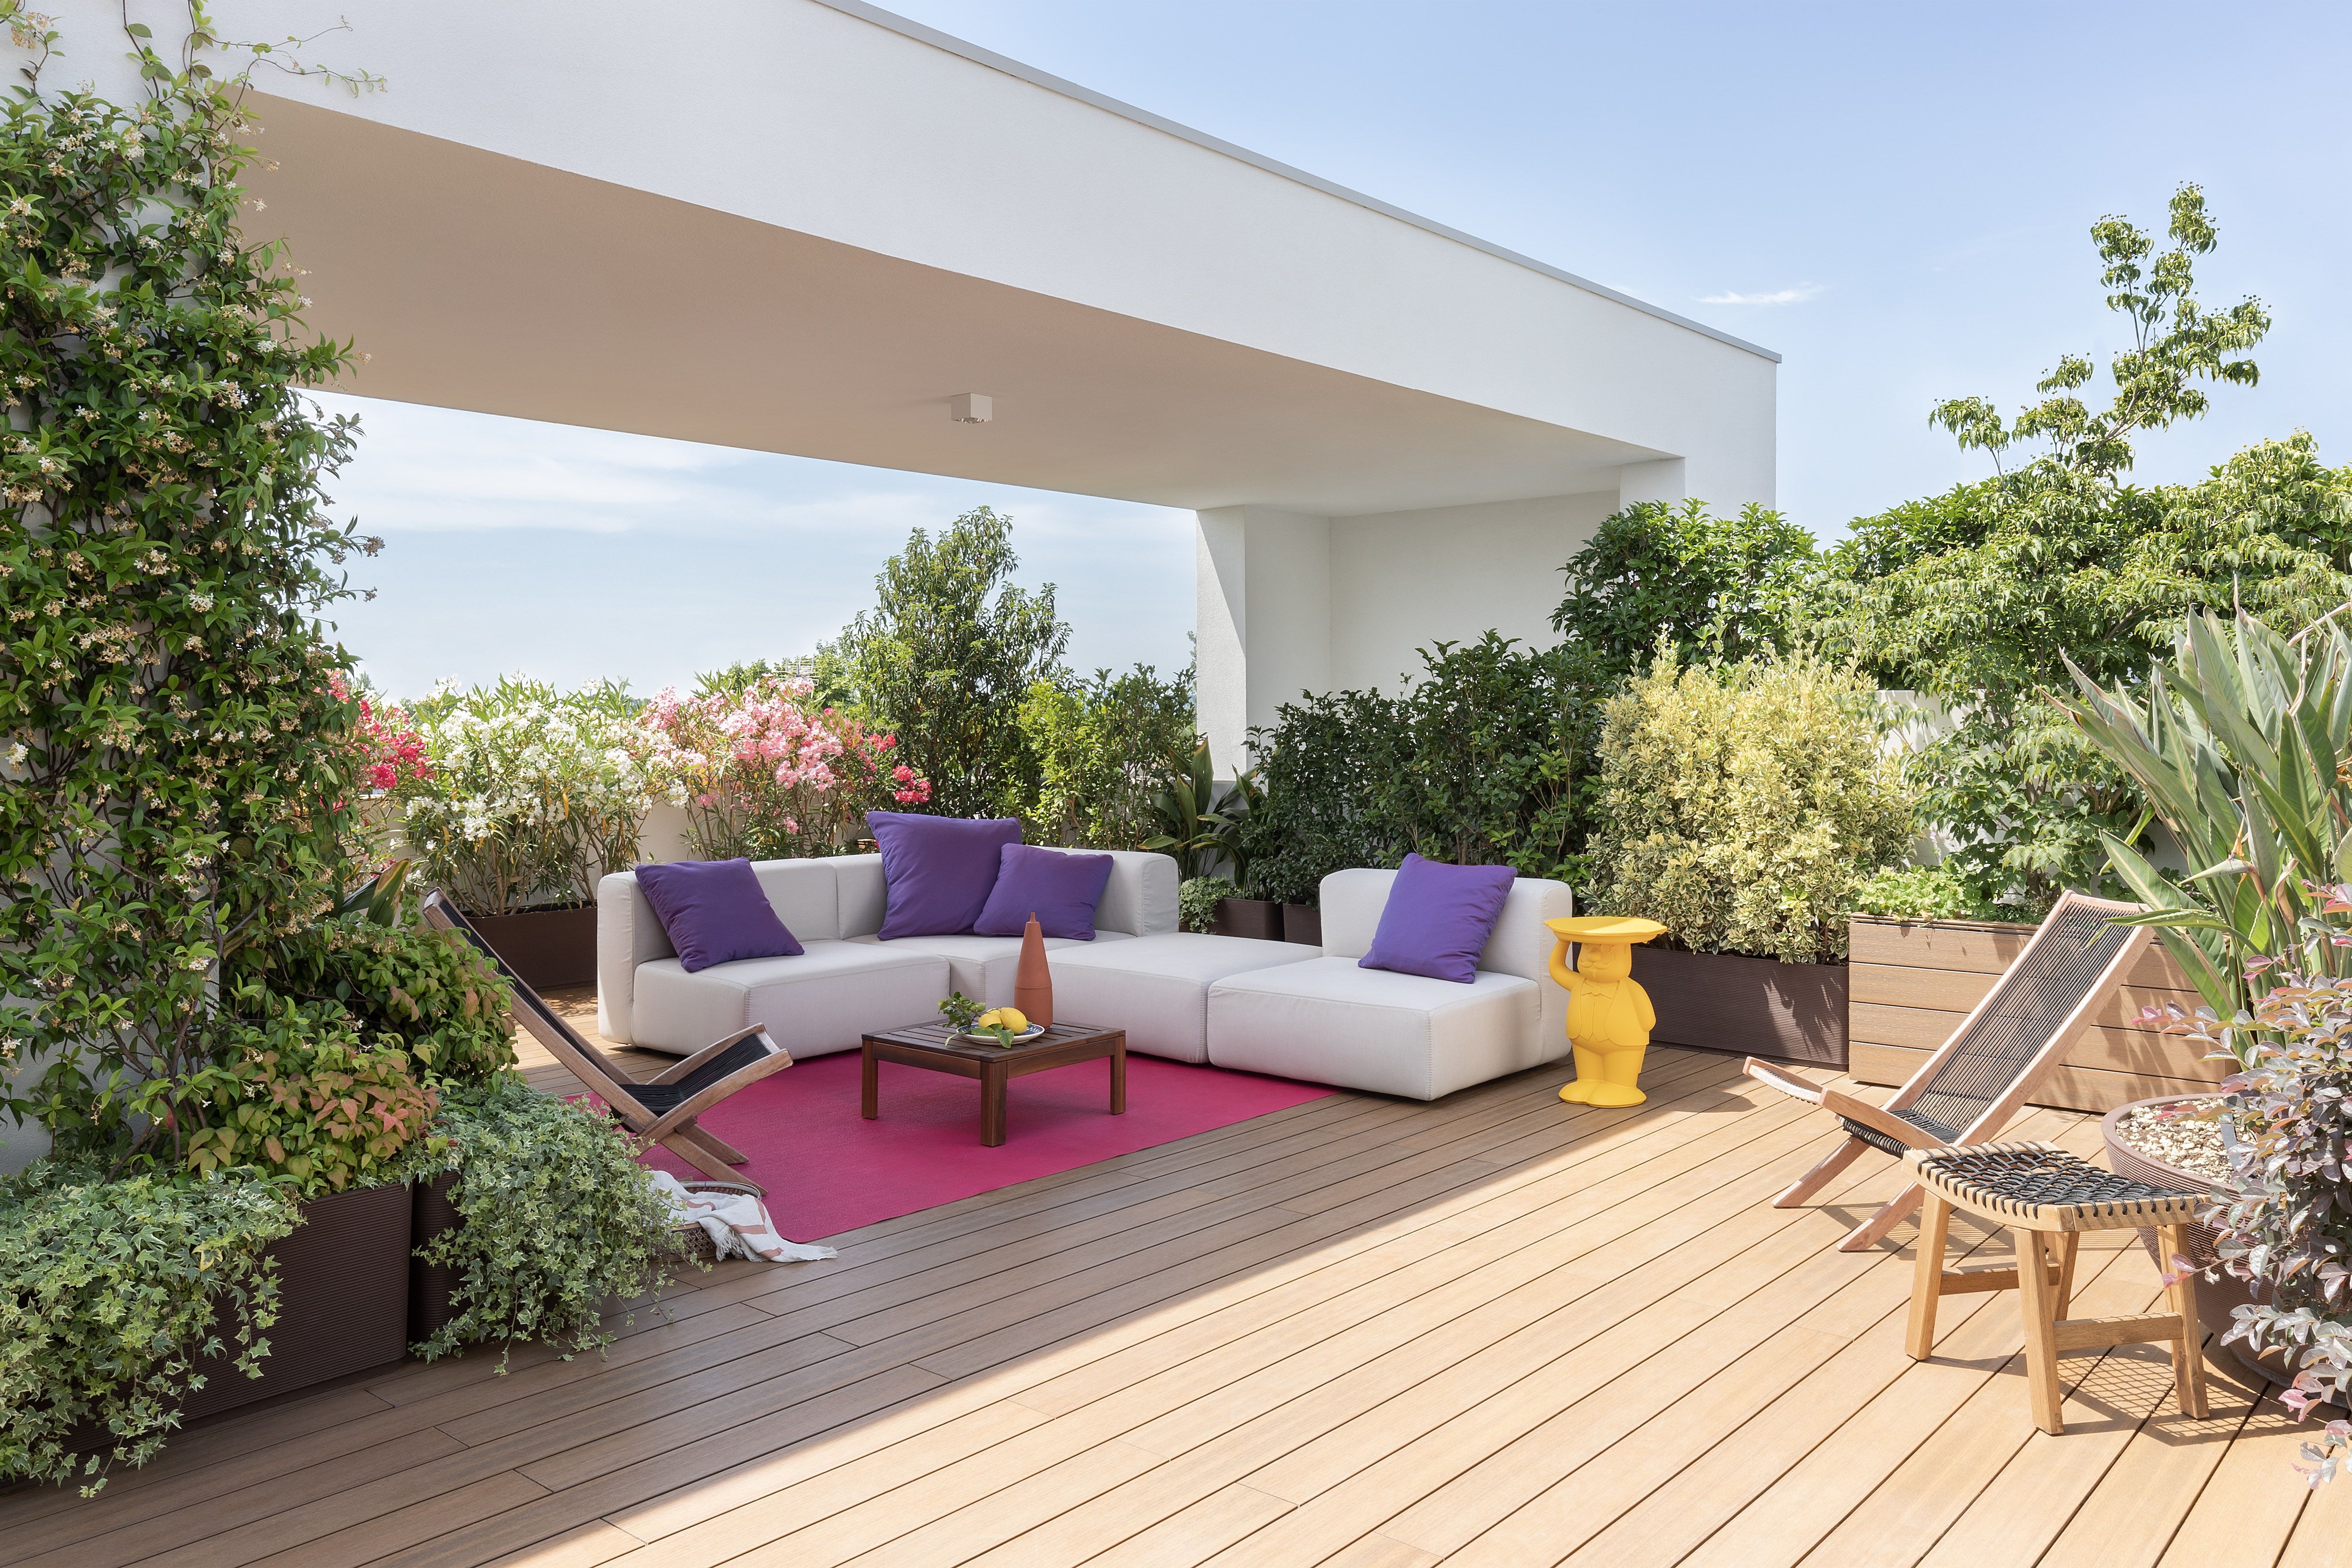 Una terraza decorada con colores alegres y plantas de exterior